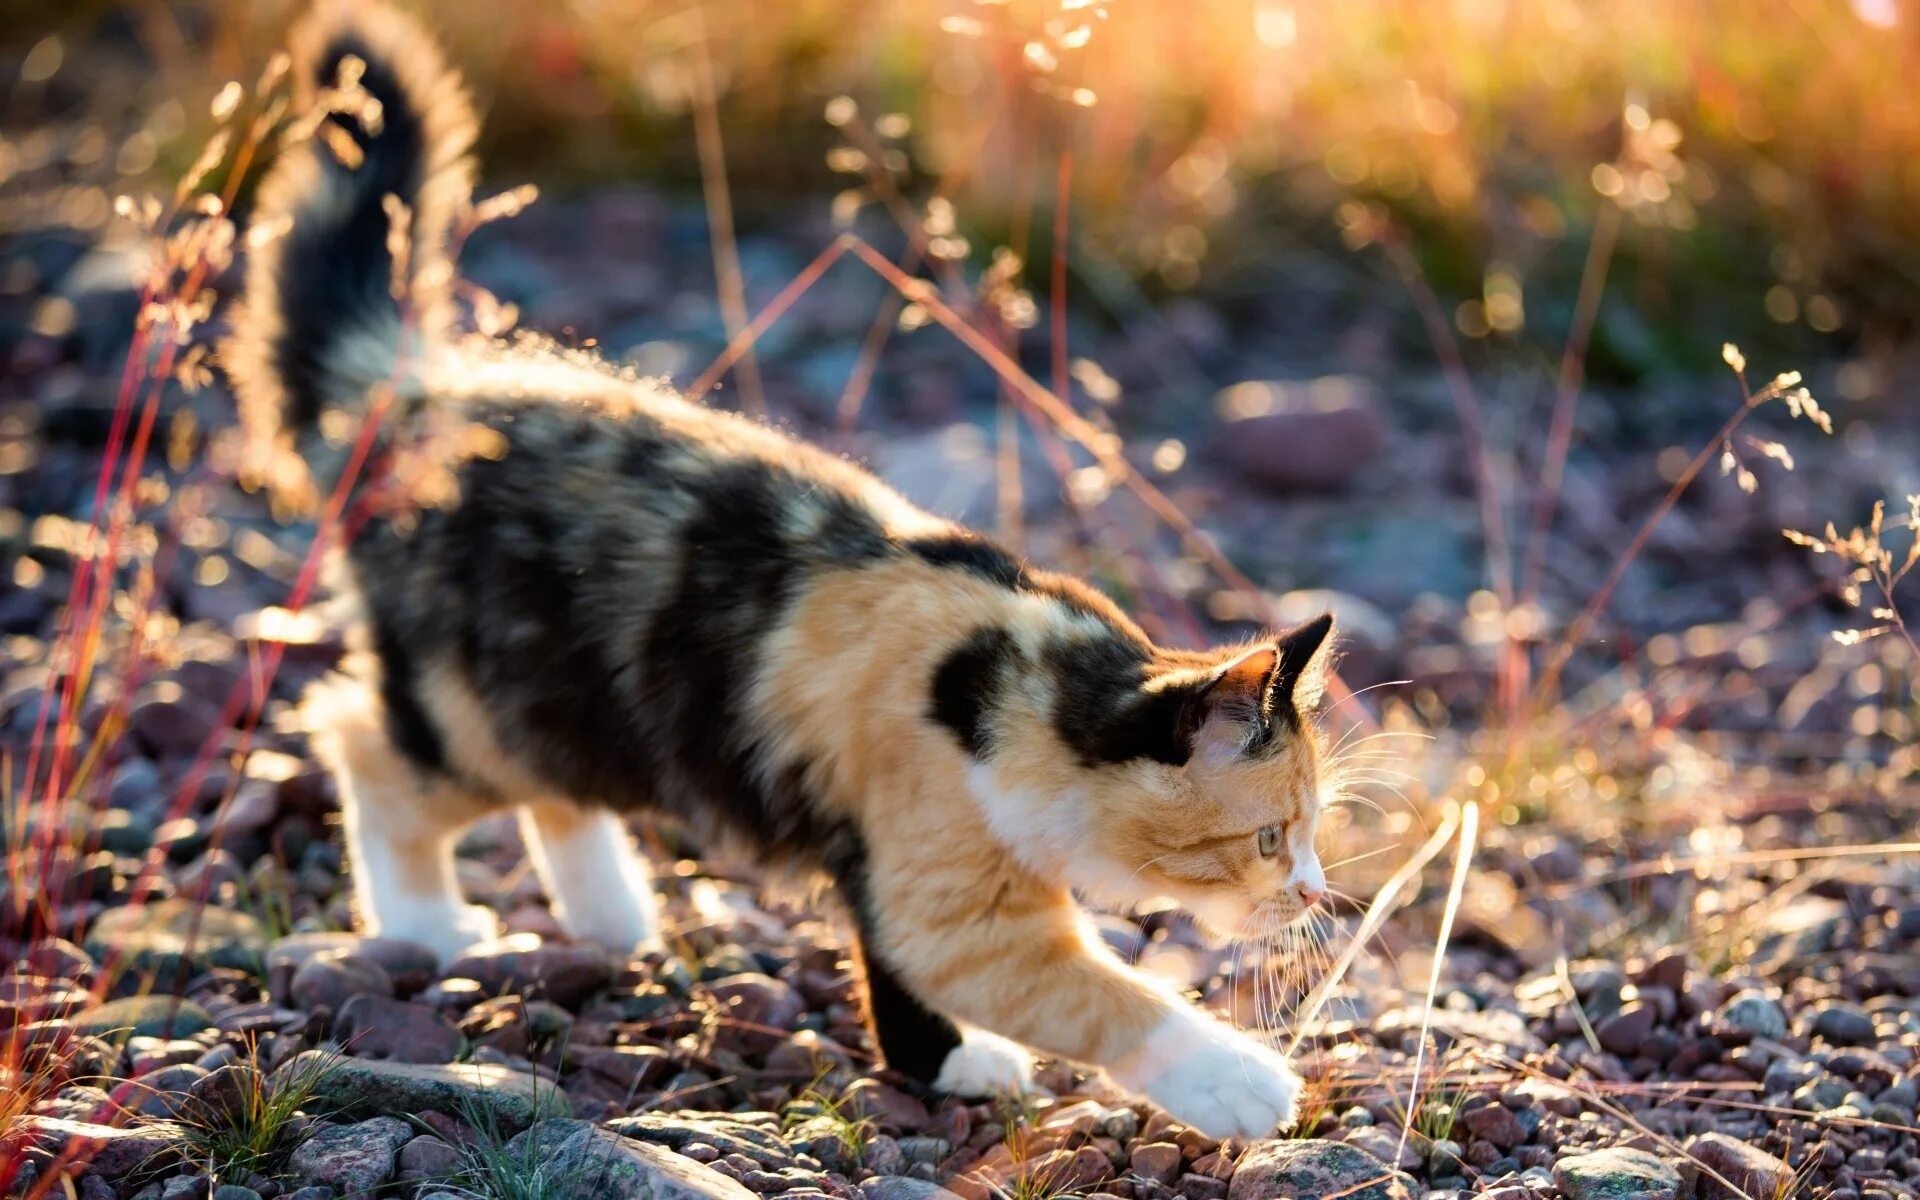 Черепаховая кошка Калико. Трехшерстная кошка Калико. Американская жесткошерстная кошка трехцветная. Черепаховая кошка Калико на природе.